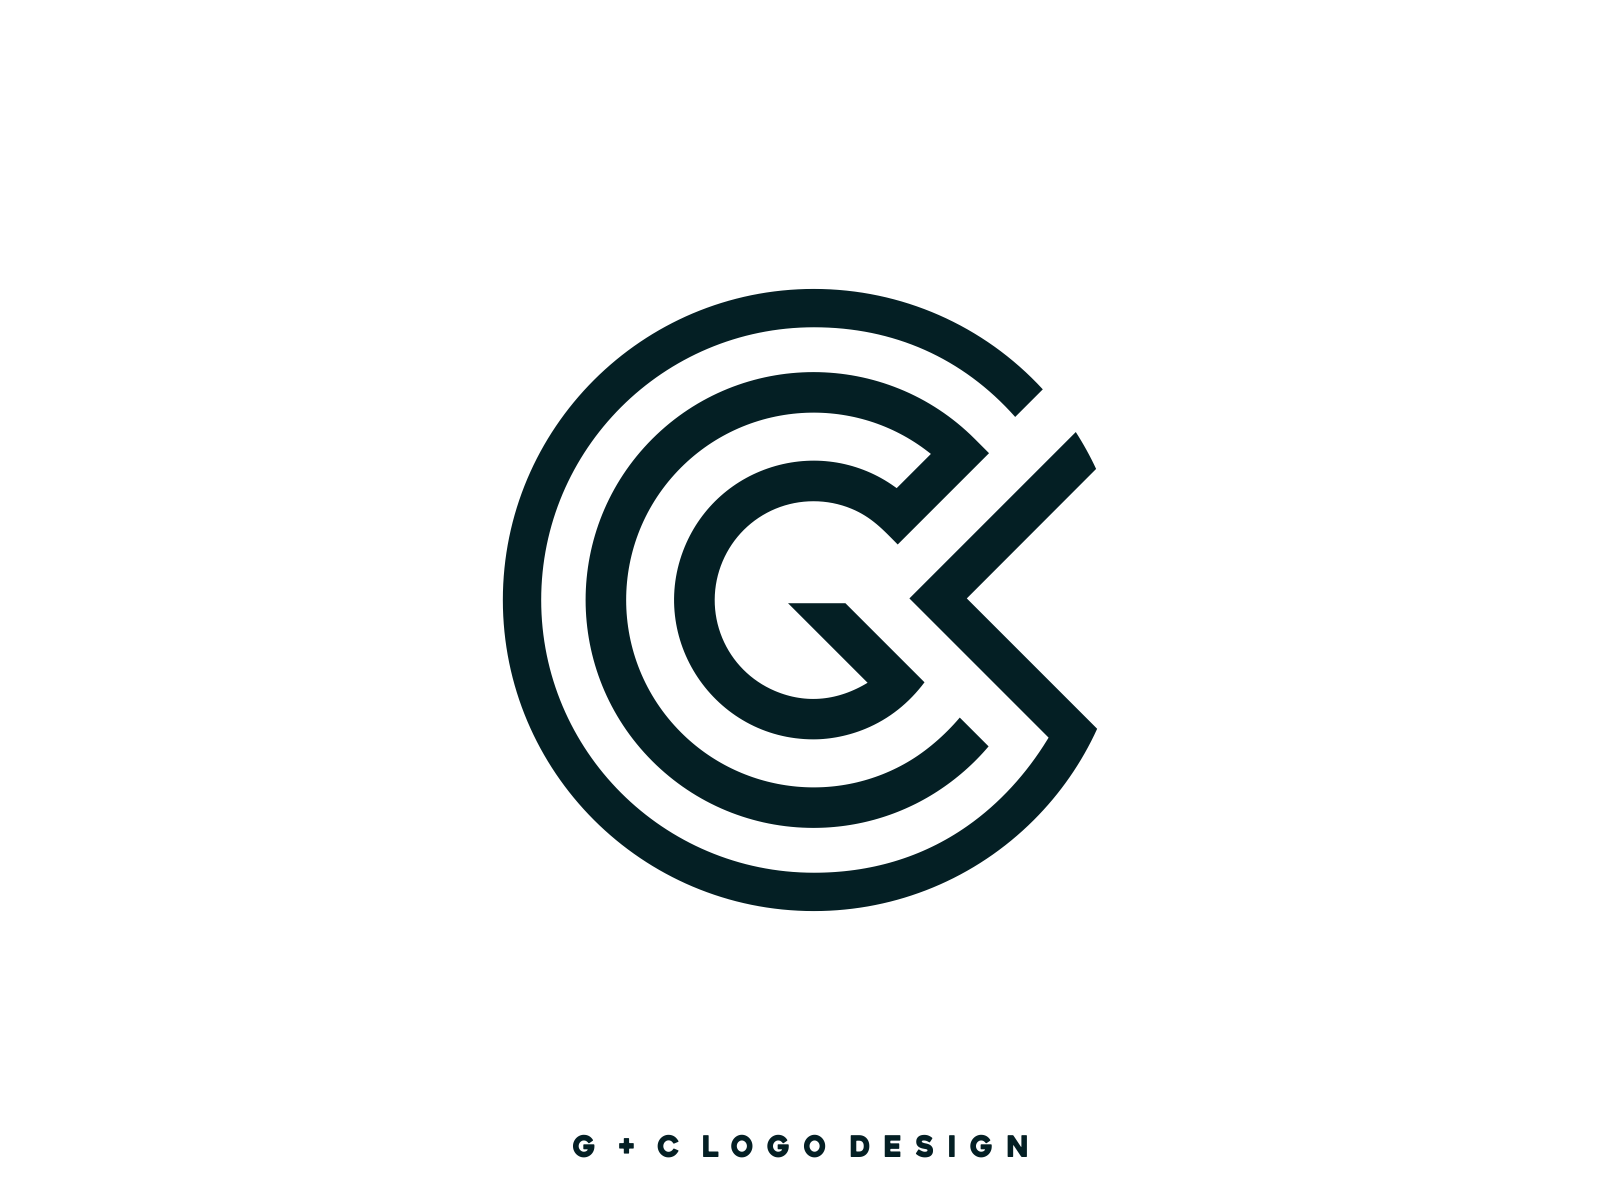 GC G C letter logo design. Initial letter GC... - Stock Illustration  [105741934] - PIXTA